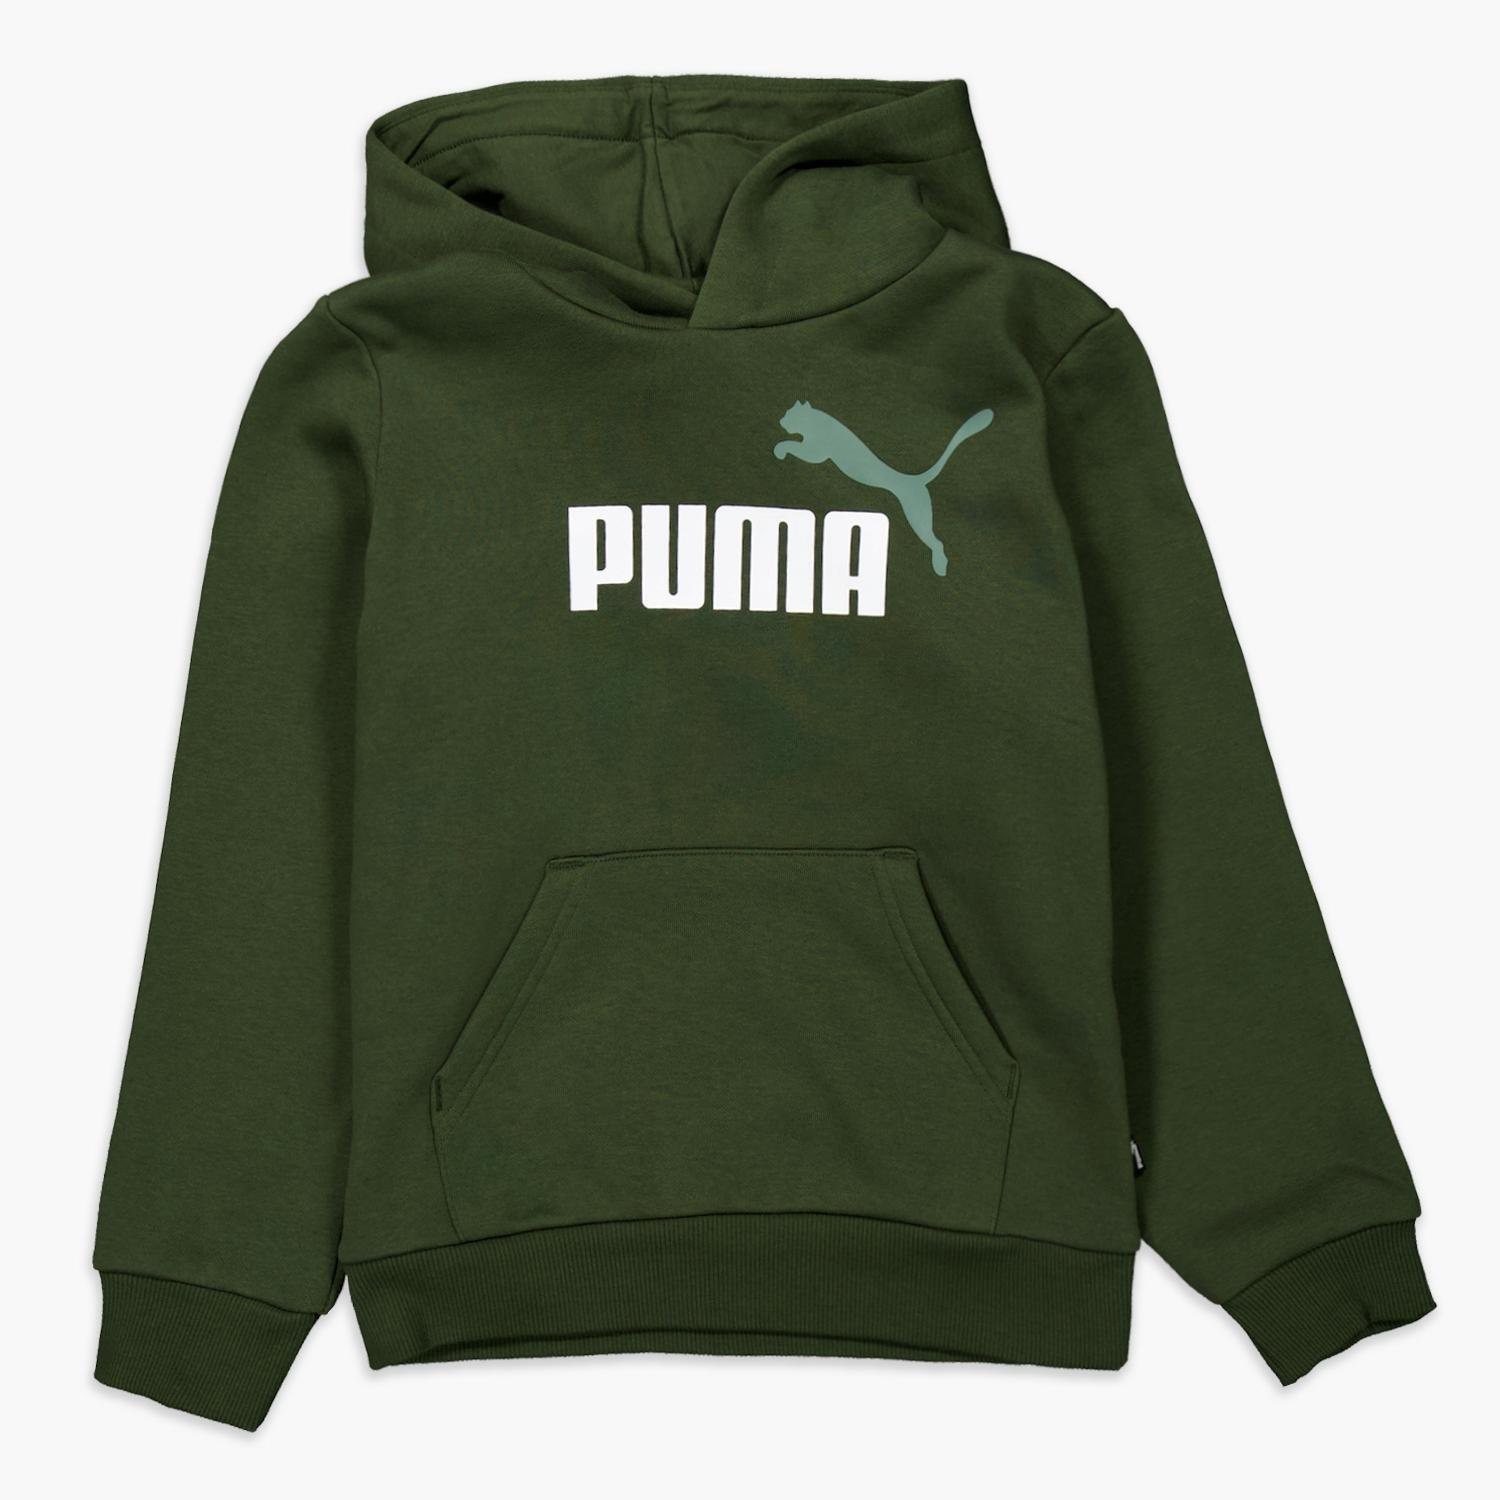 Puma Puma trui khaki kinderen kinderen